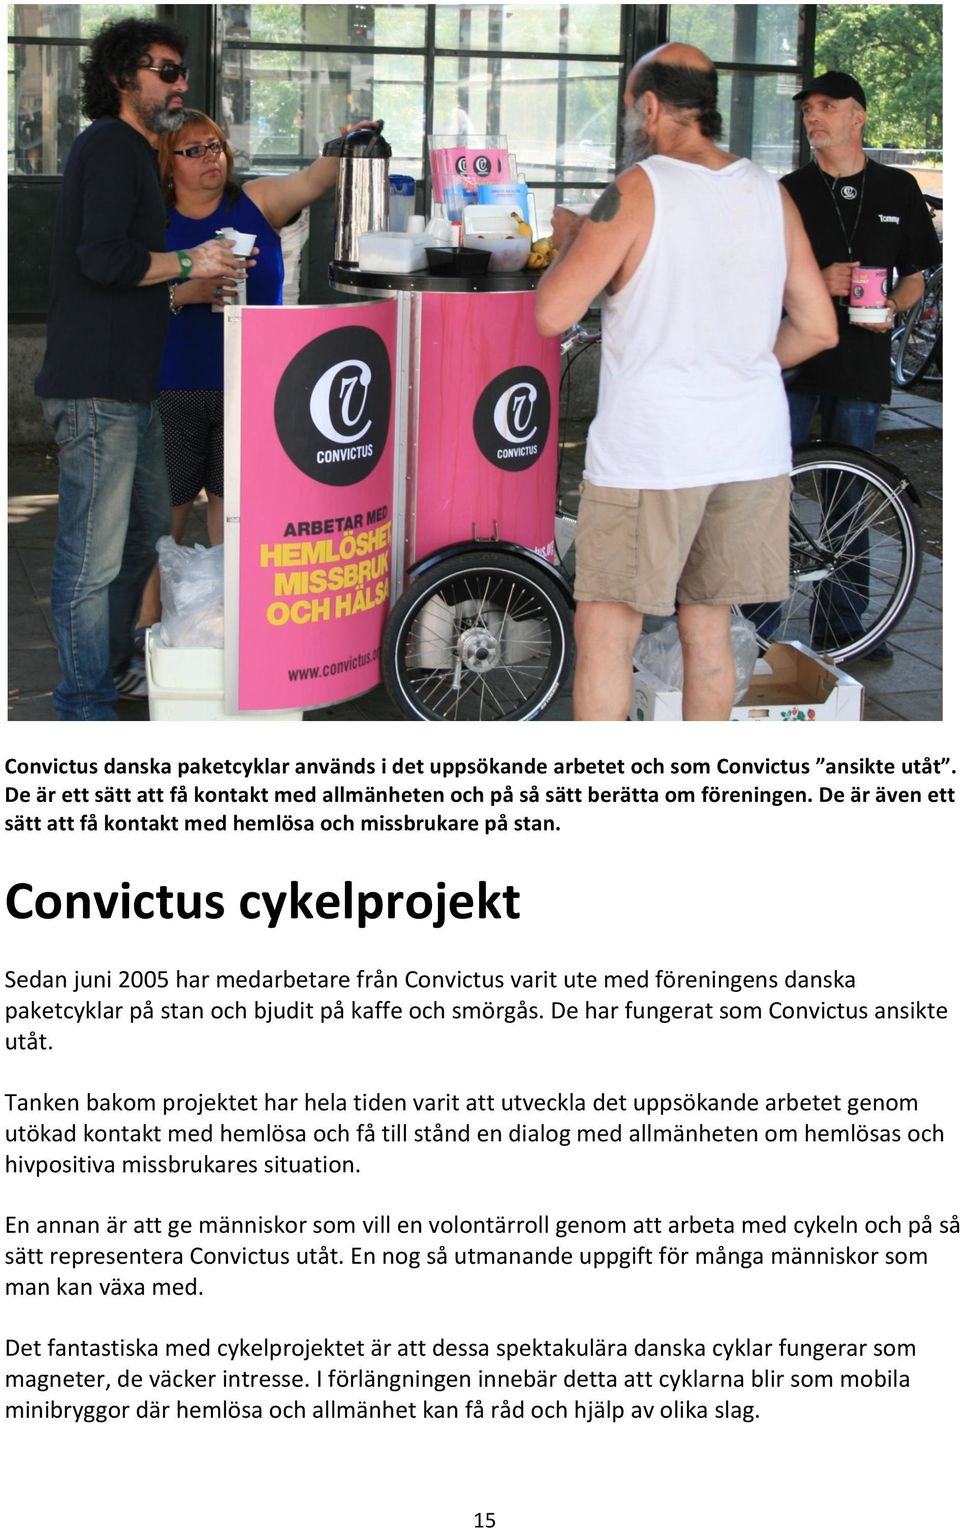 Convictus cykelprojekt Sedan juni 2005 har medarbetare från Convictus varit ute med föreningens danska paketcyklar på stan och bjudit på kaffe och smörgås. De har fungerat som Convictus ansikte utåt.